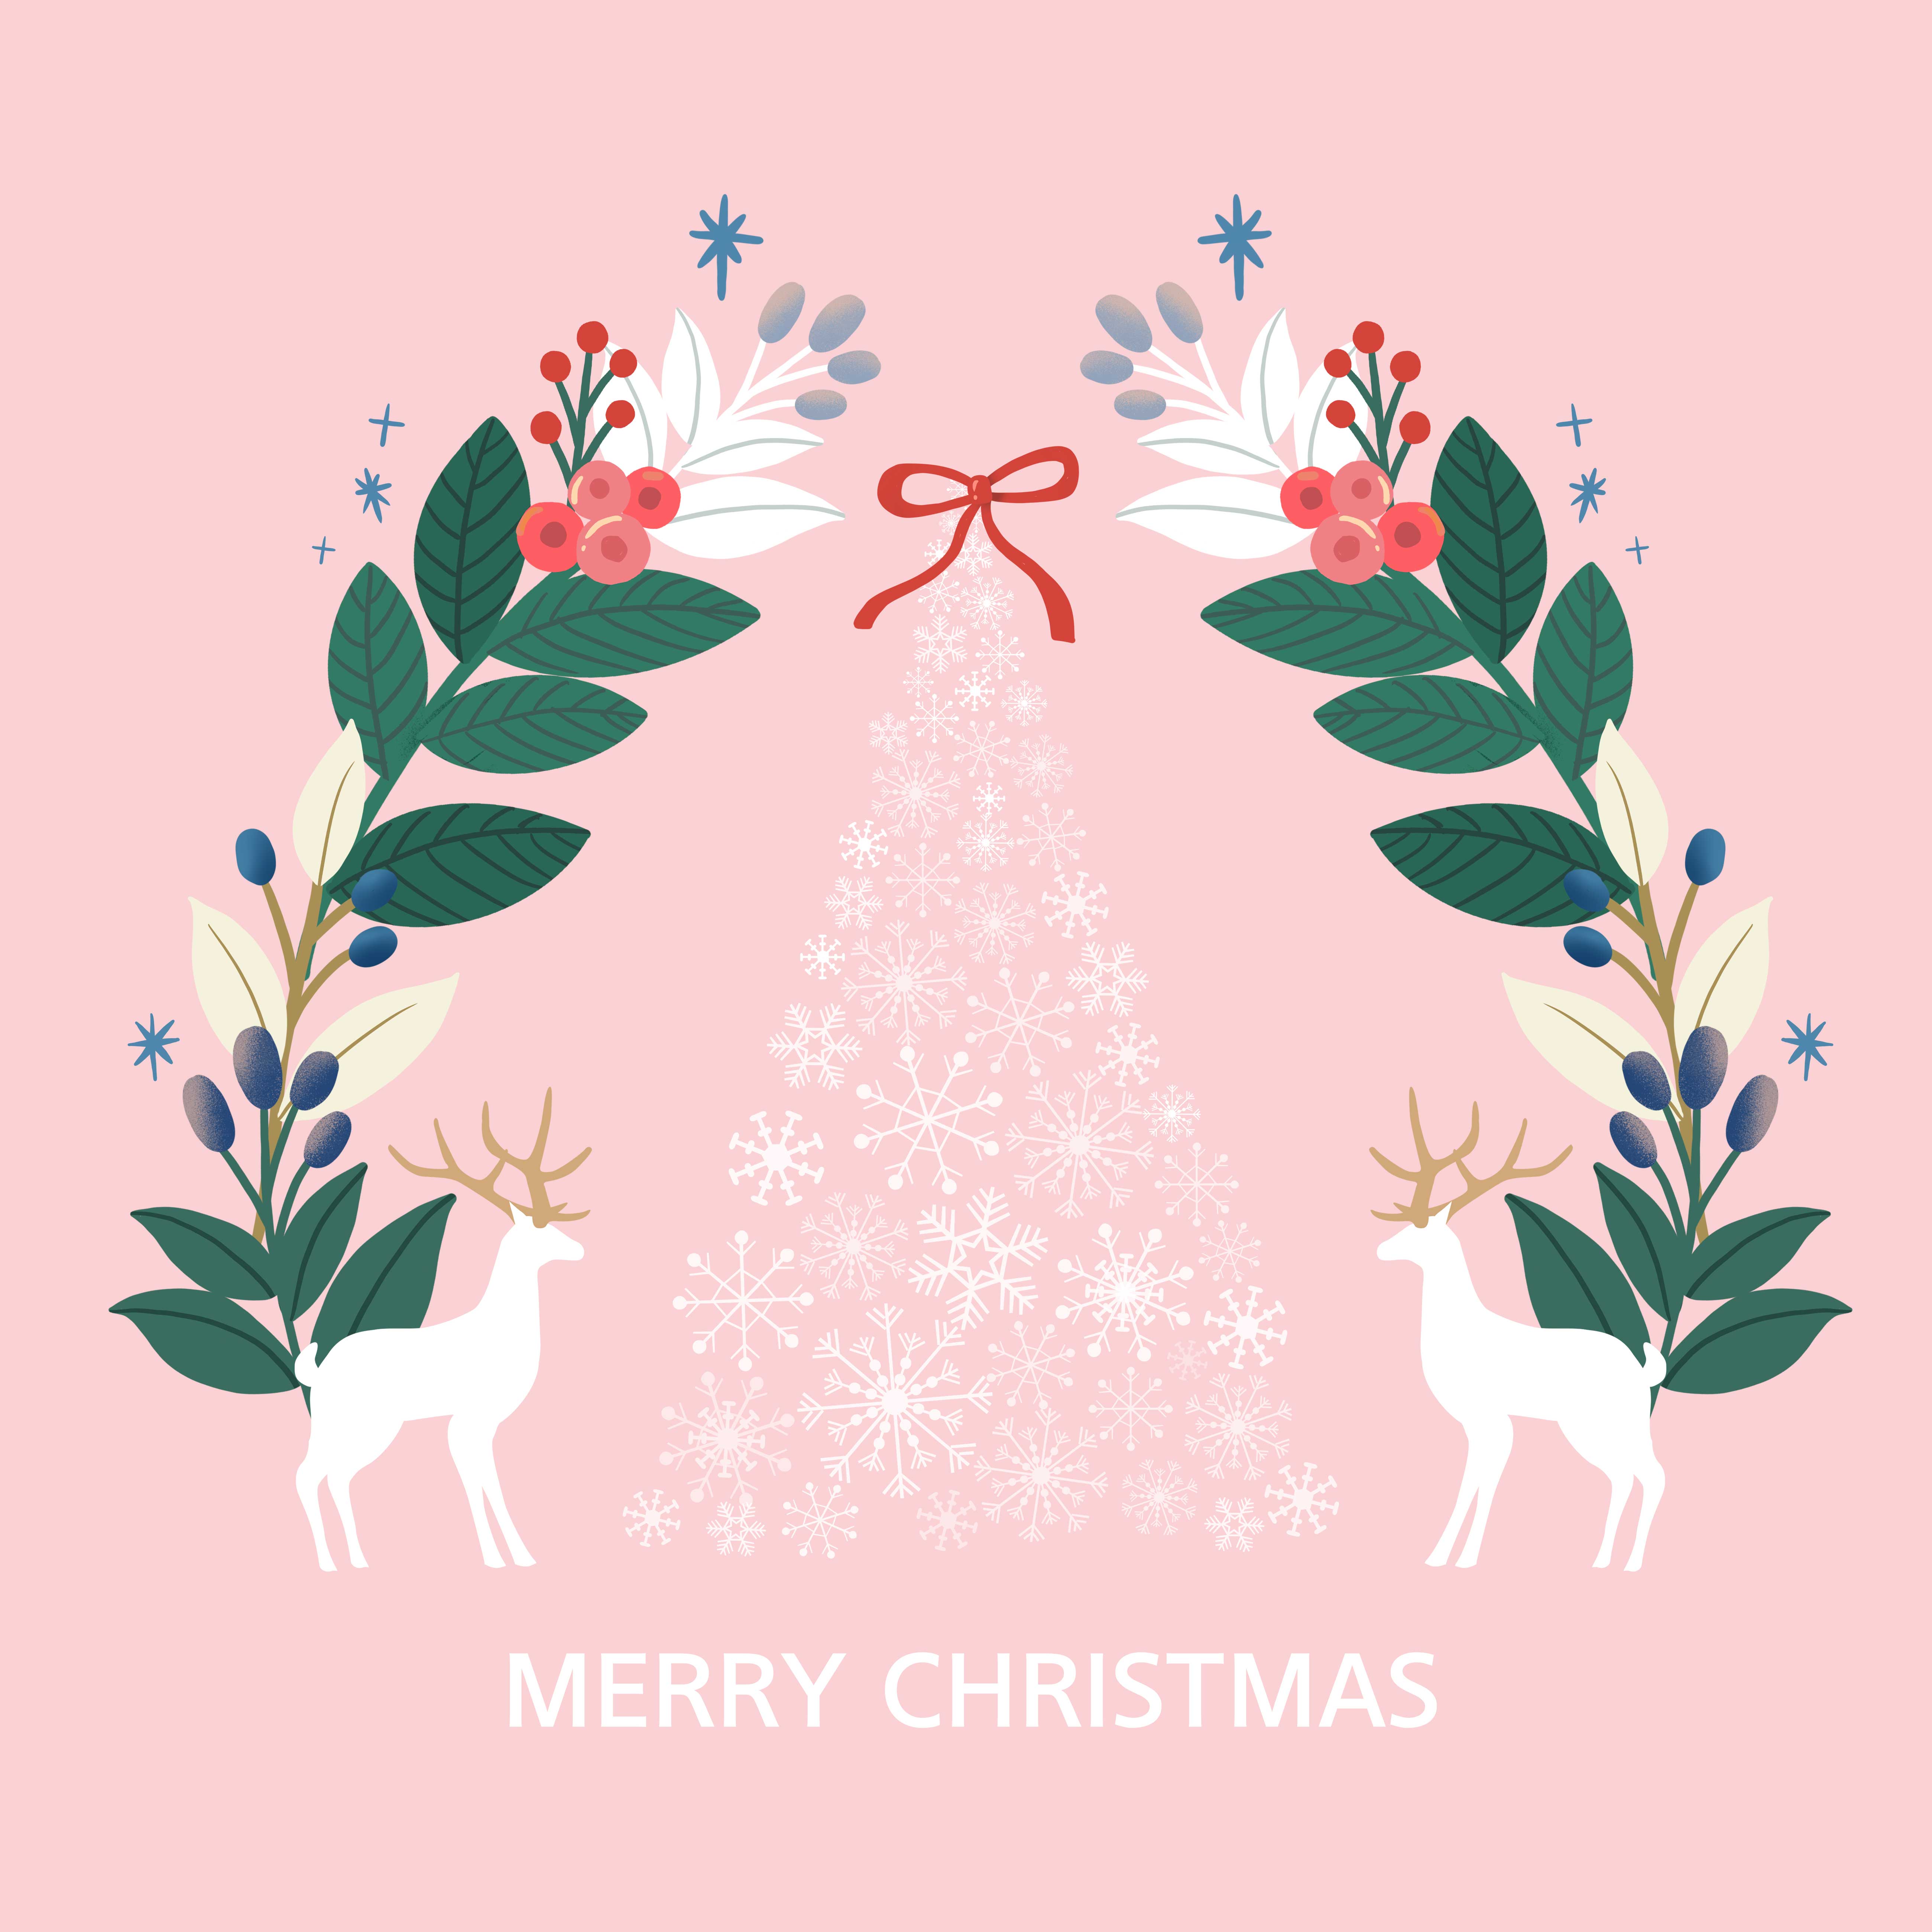 祝福问候圣诞快乐贺卡/海报psd素材设计素材模板